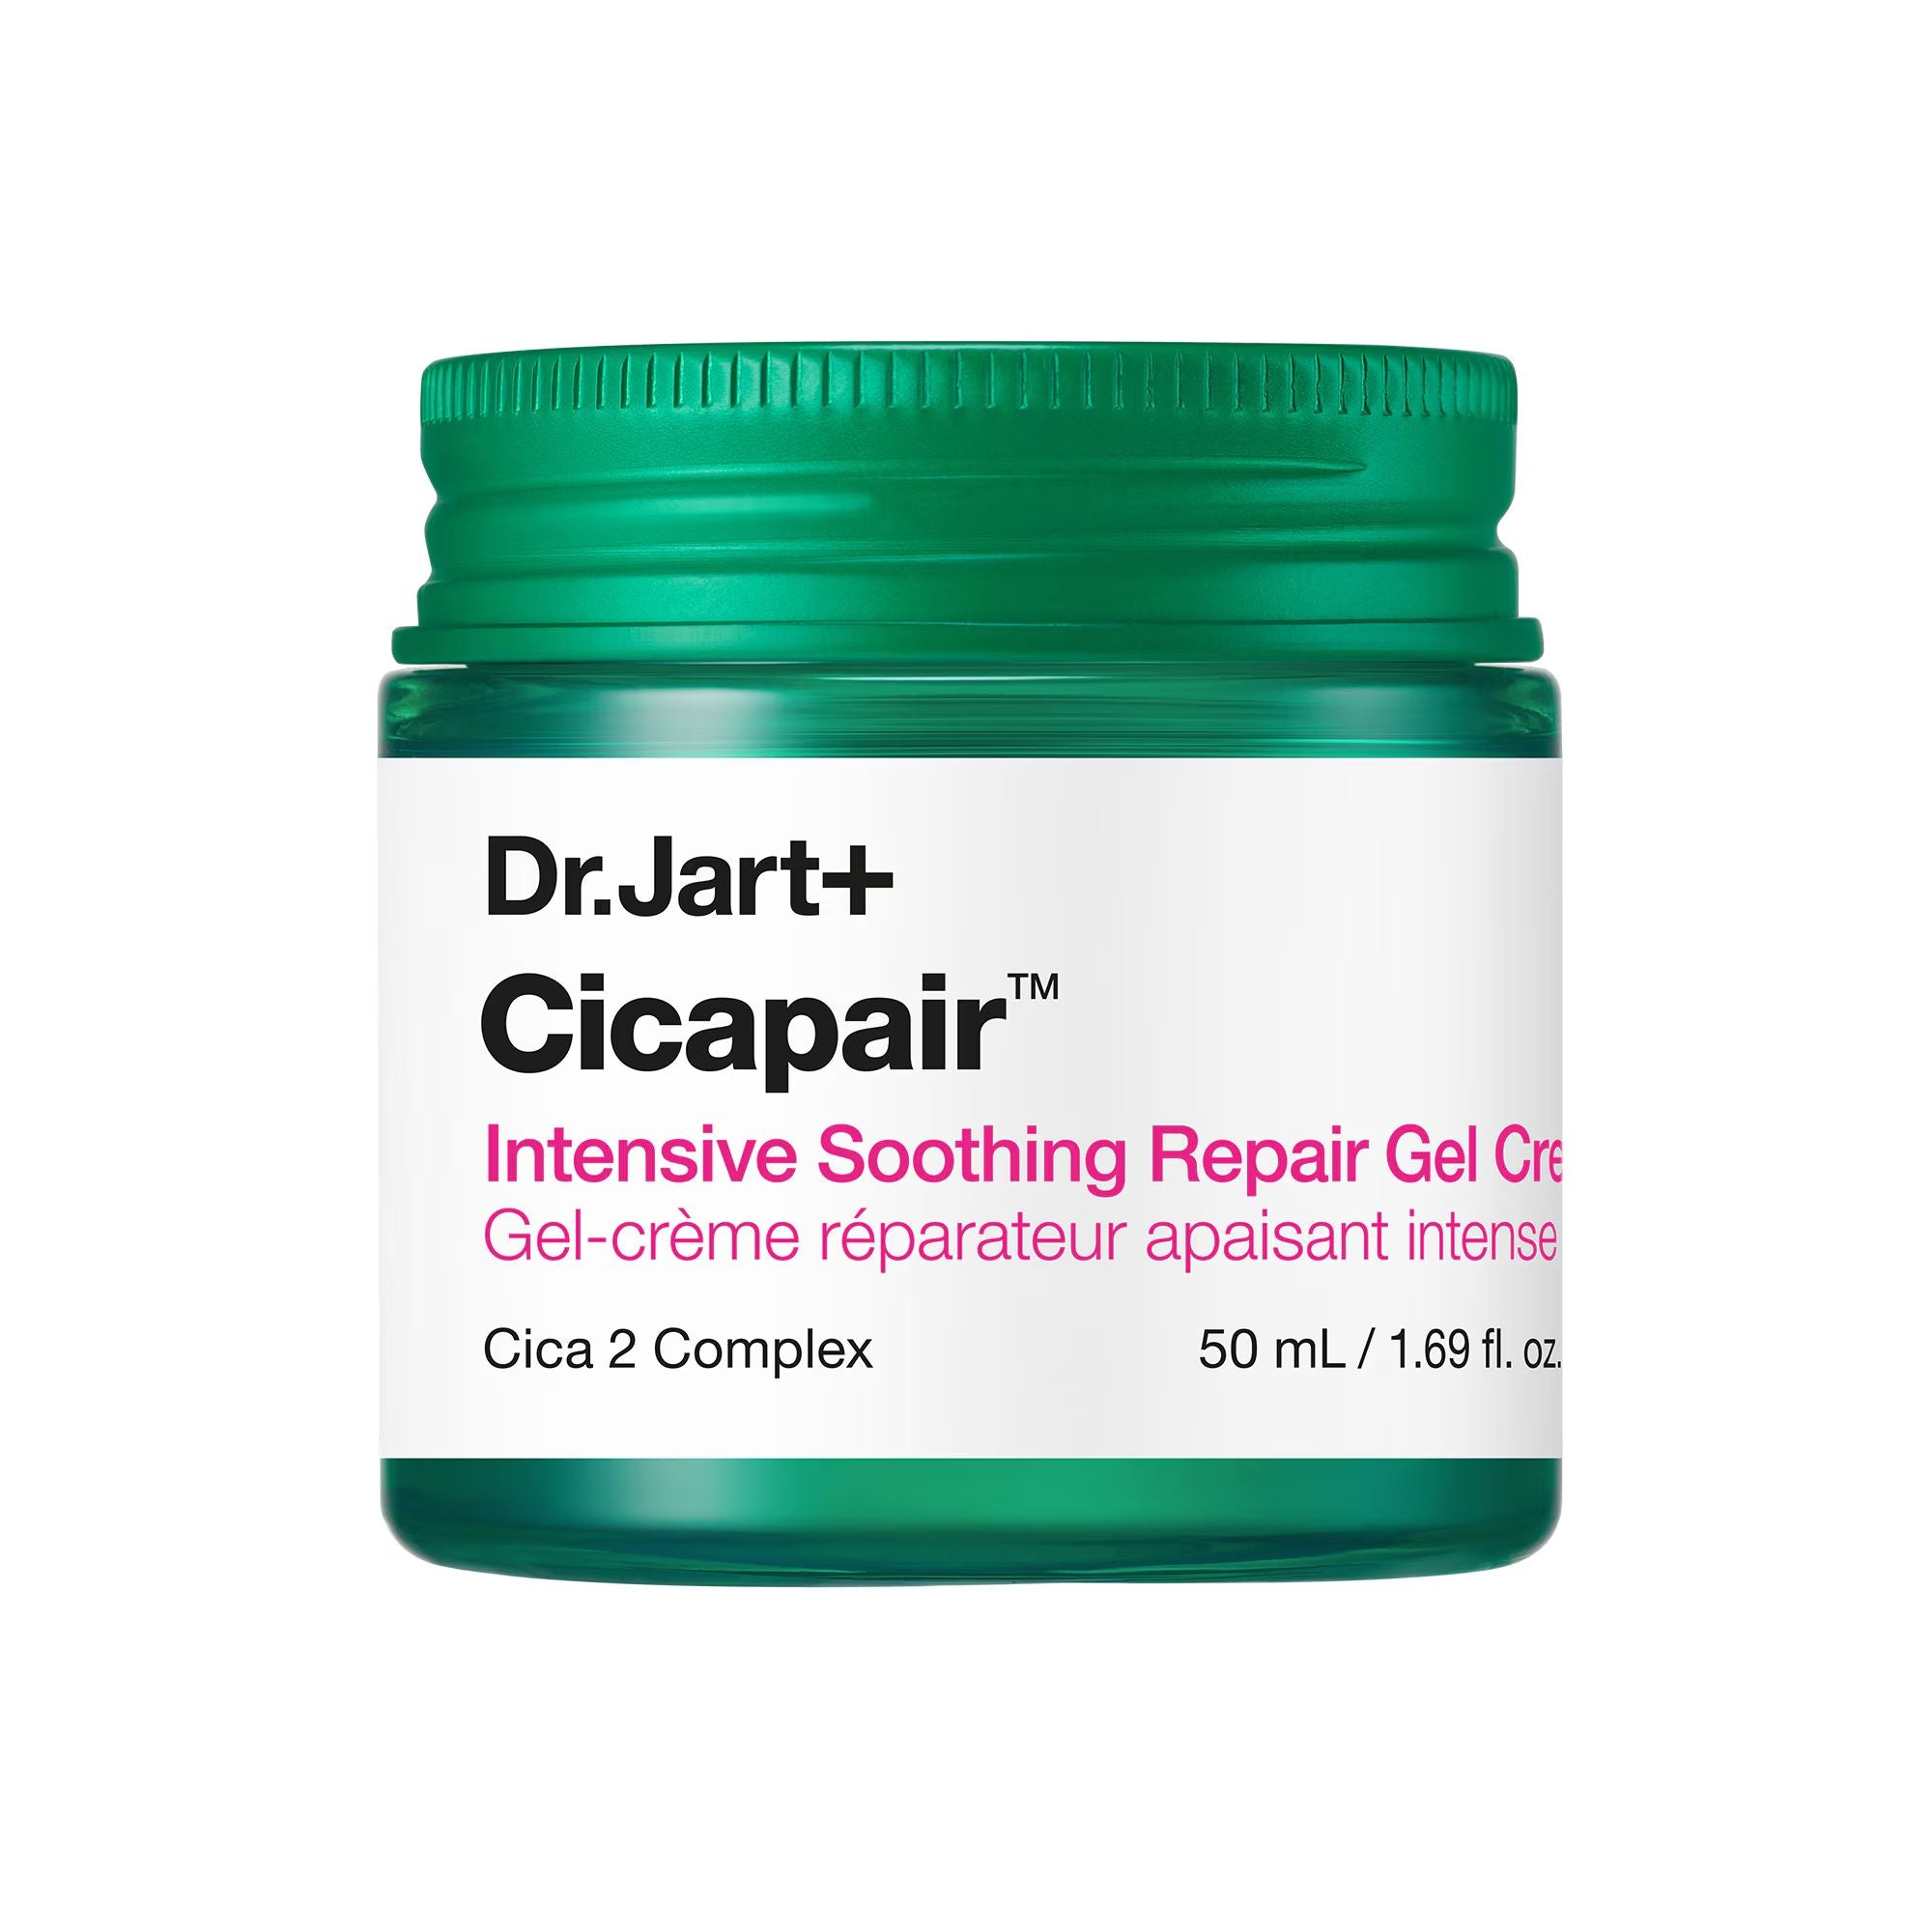 Cicapair Intensive Soothing Repair Gel Cream